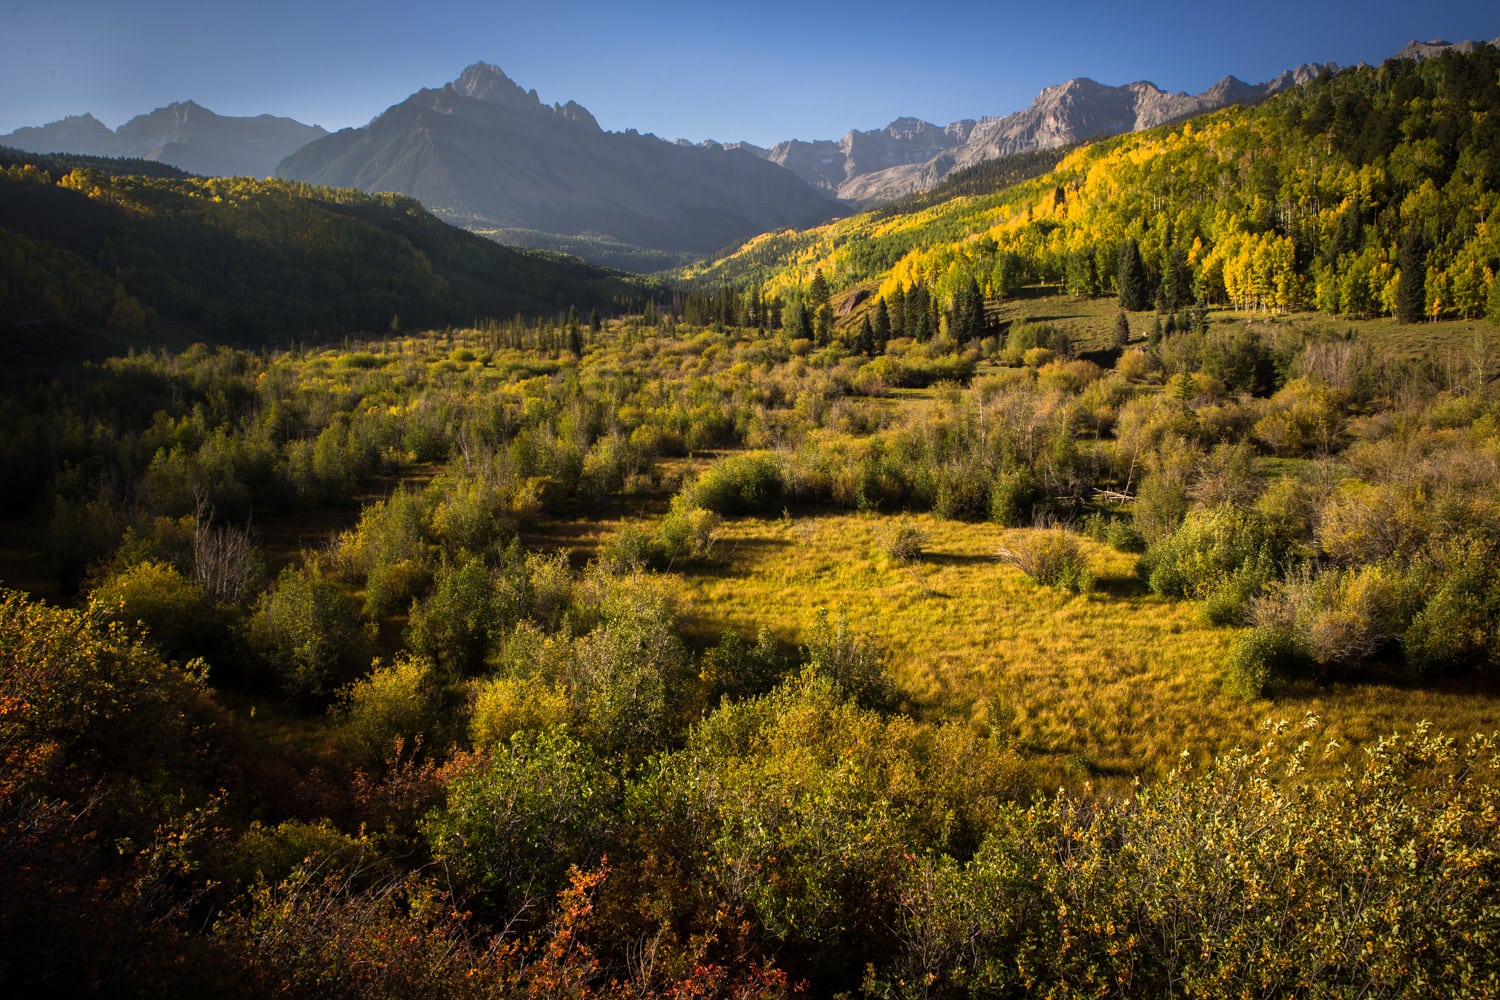 Sneffels Range in Colorado surrounded by golden aspen trees